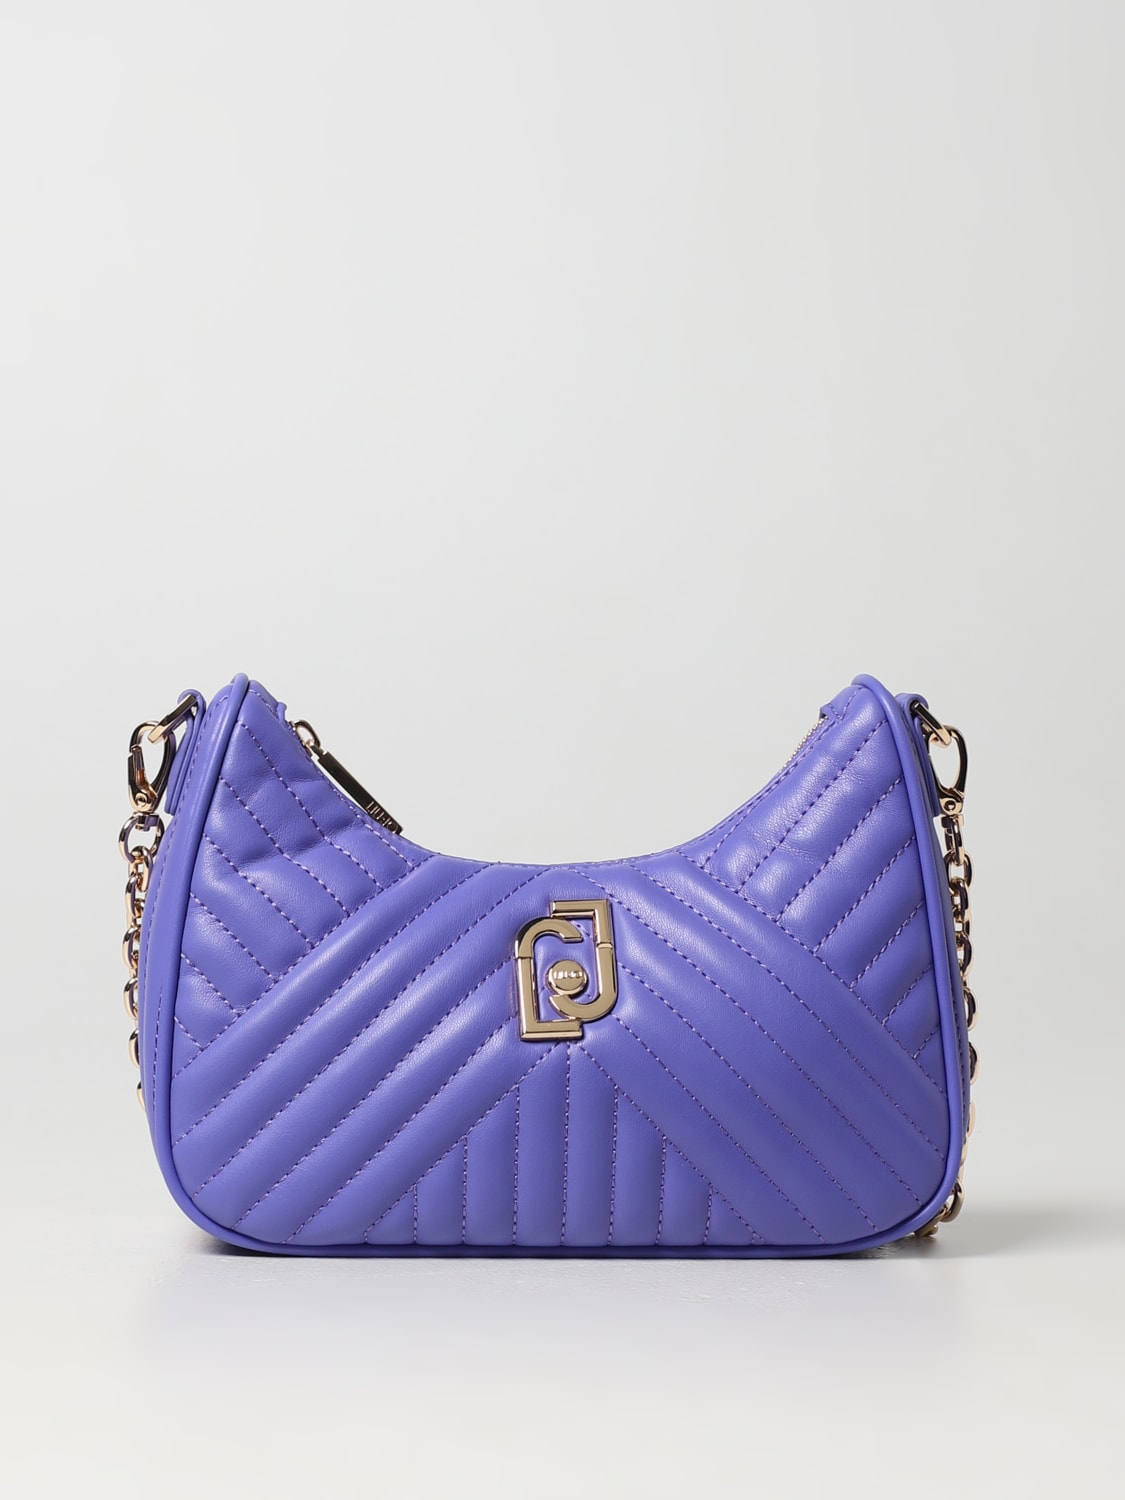 bag for woman - Violet | Liu Jo shoulder bag AA3225E0426 online on GIGLIO.COM